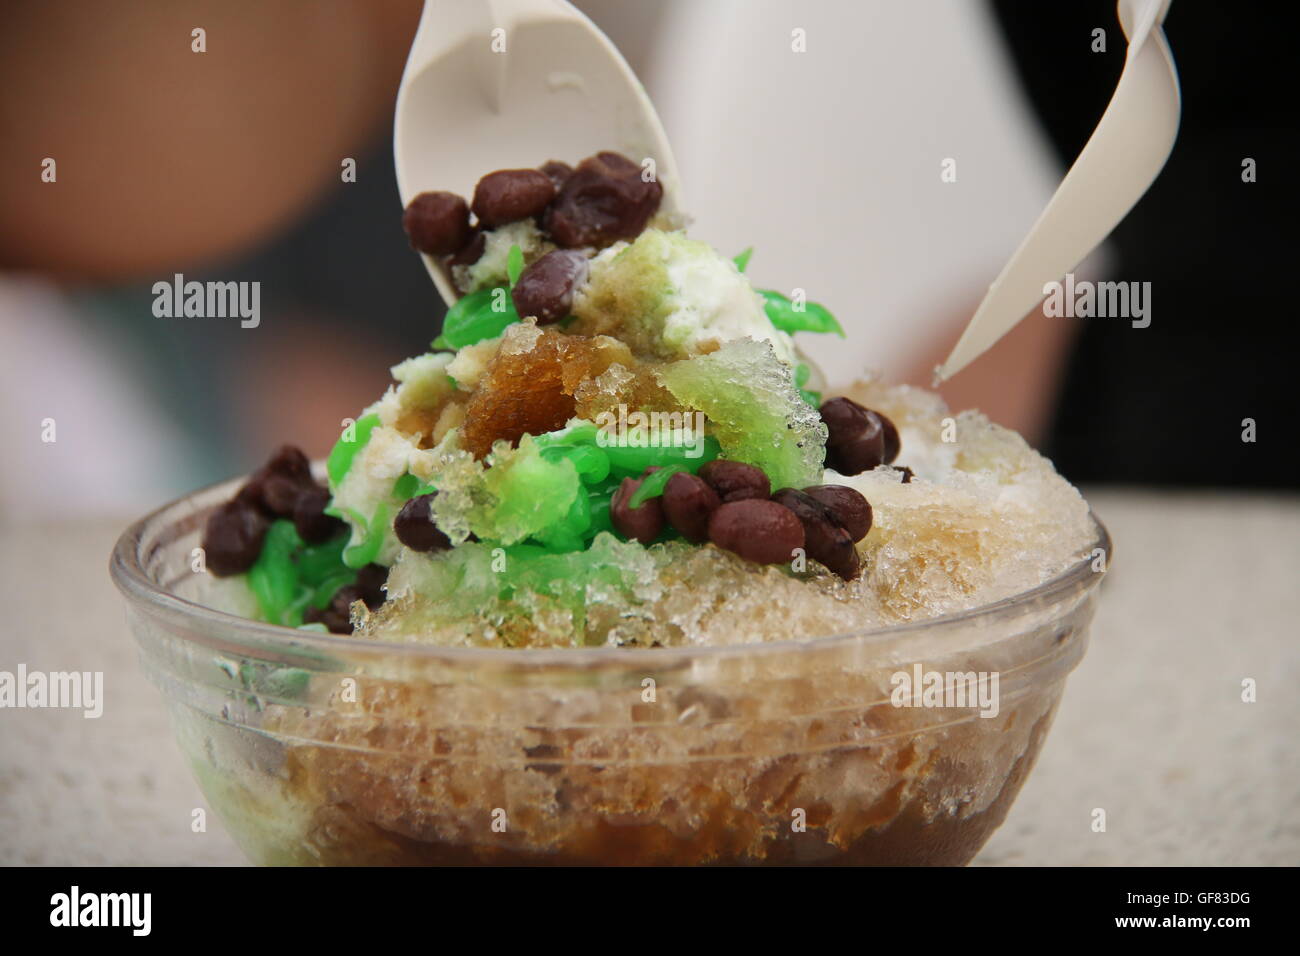 Ice Kacang (rasiert Eis mit roten Bohnen) fertig gemischt wird, konsumiert werden. Stockfoto